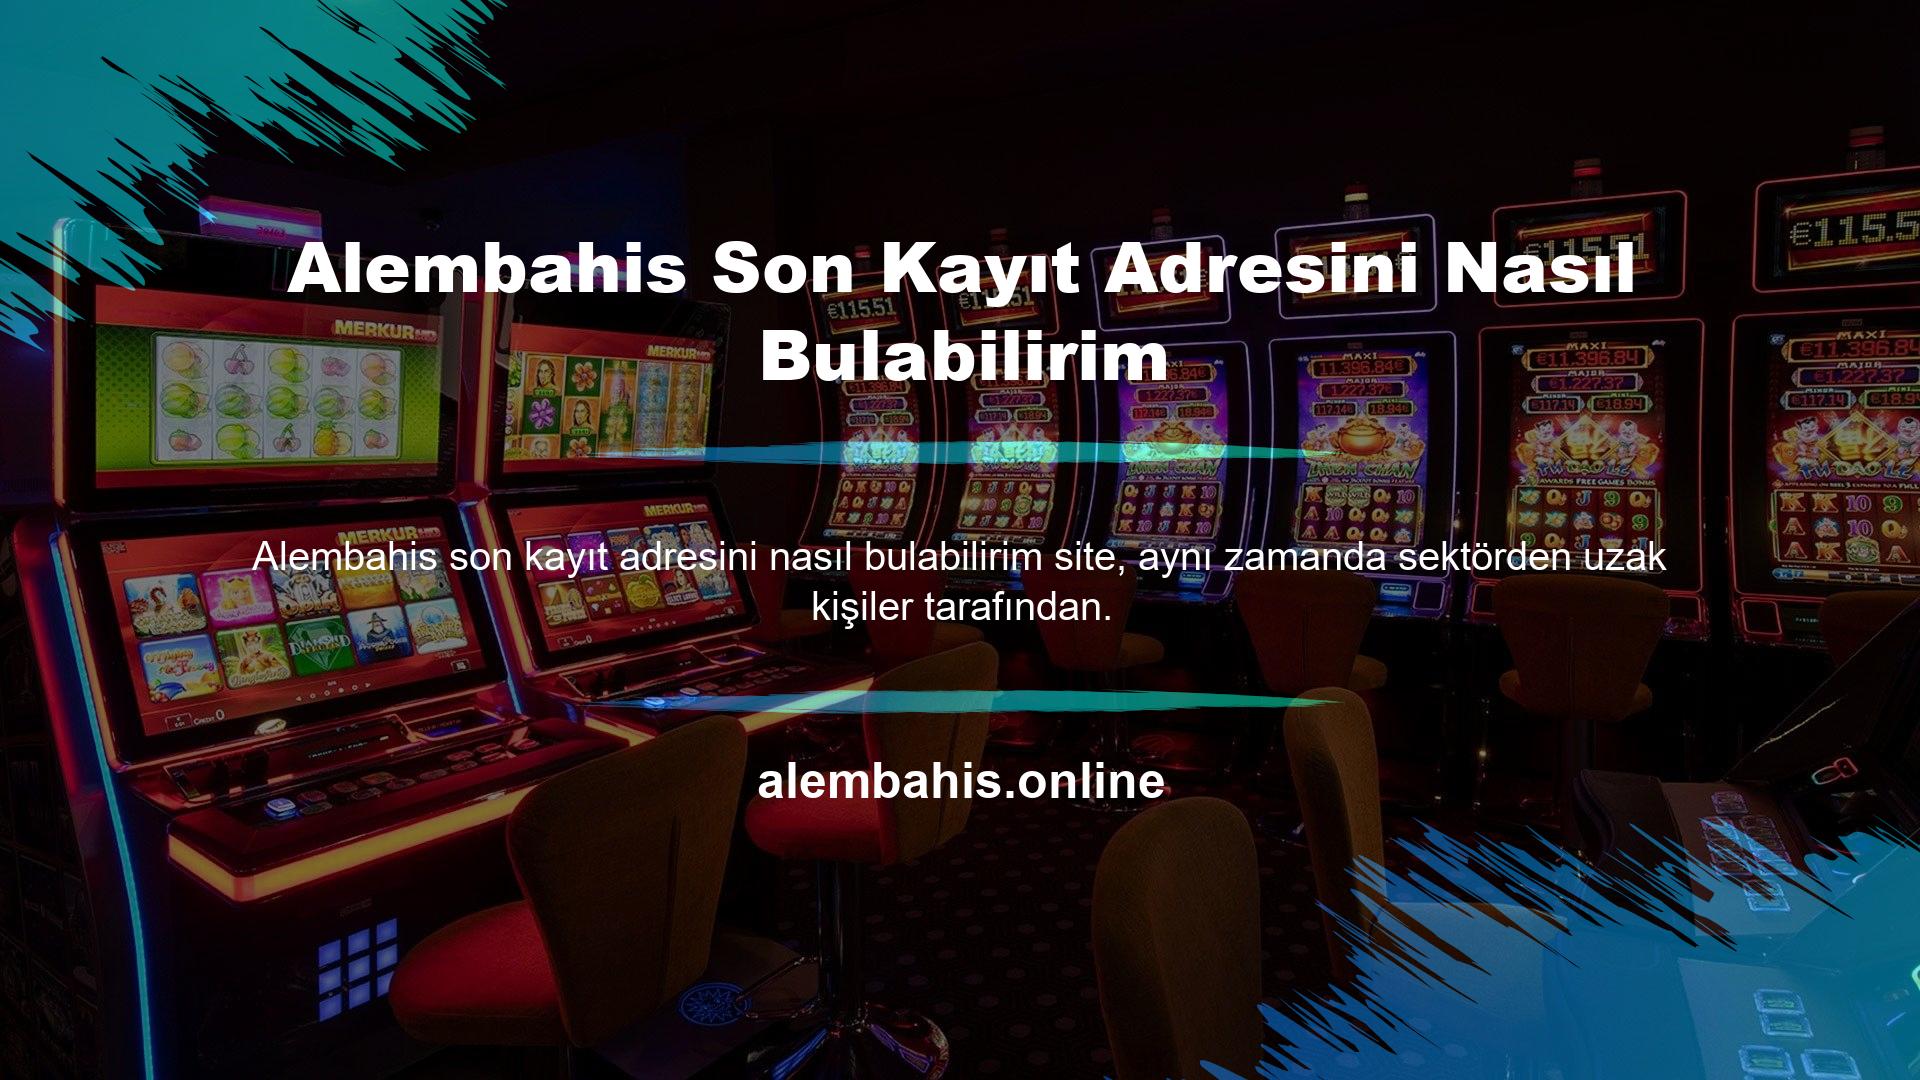 Çevrimiçi bahisçiler, ortalama olarak sekiz yılı aşkın bir süredir casino hizmetleri sunmaktadır